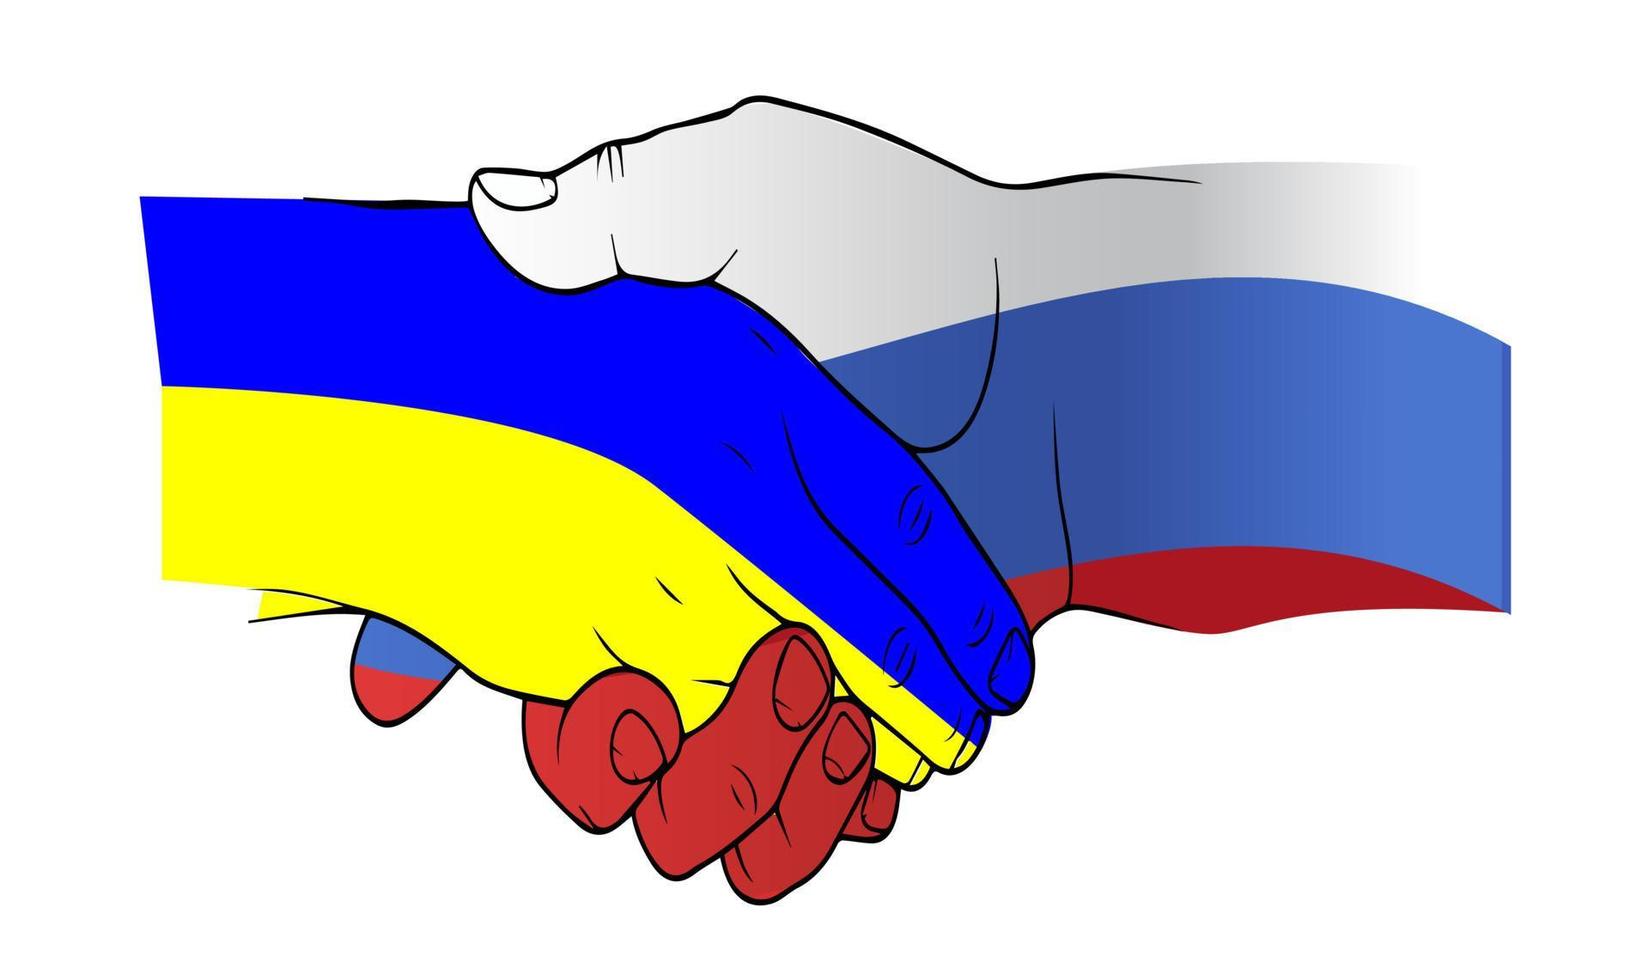 poignée de main, espoir de paix entre l'ukraine et la russie. fond de drapeaux russes et ukrainiens. illustration vectorielle colorée. vecteur